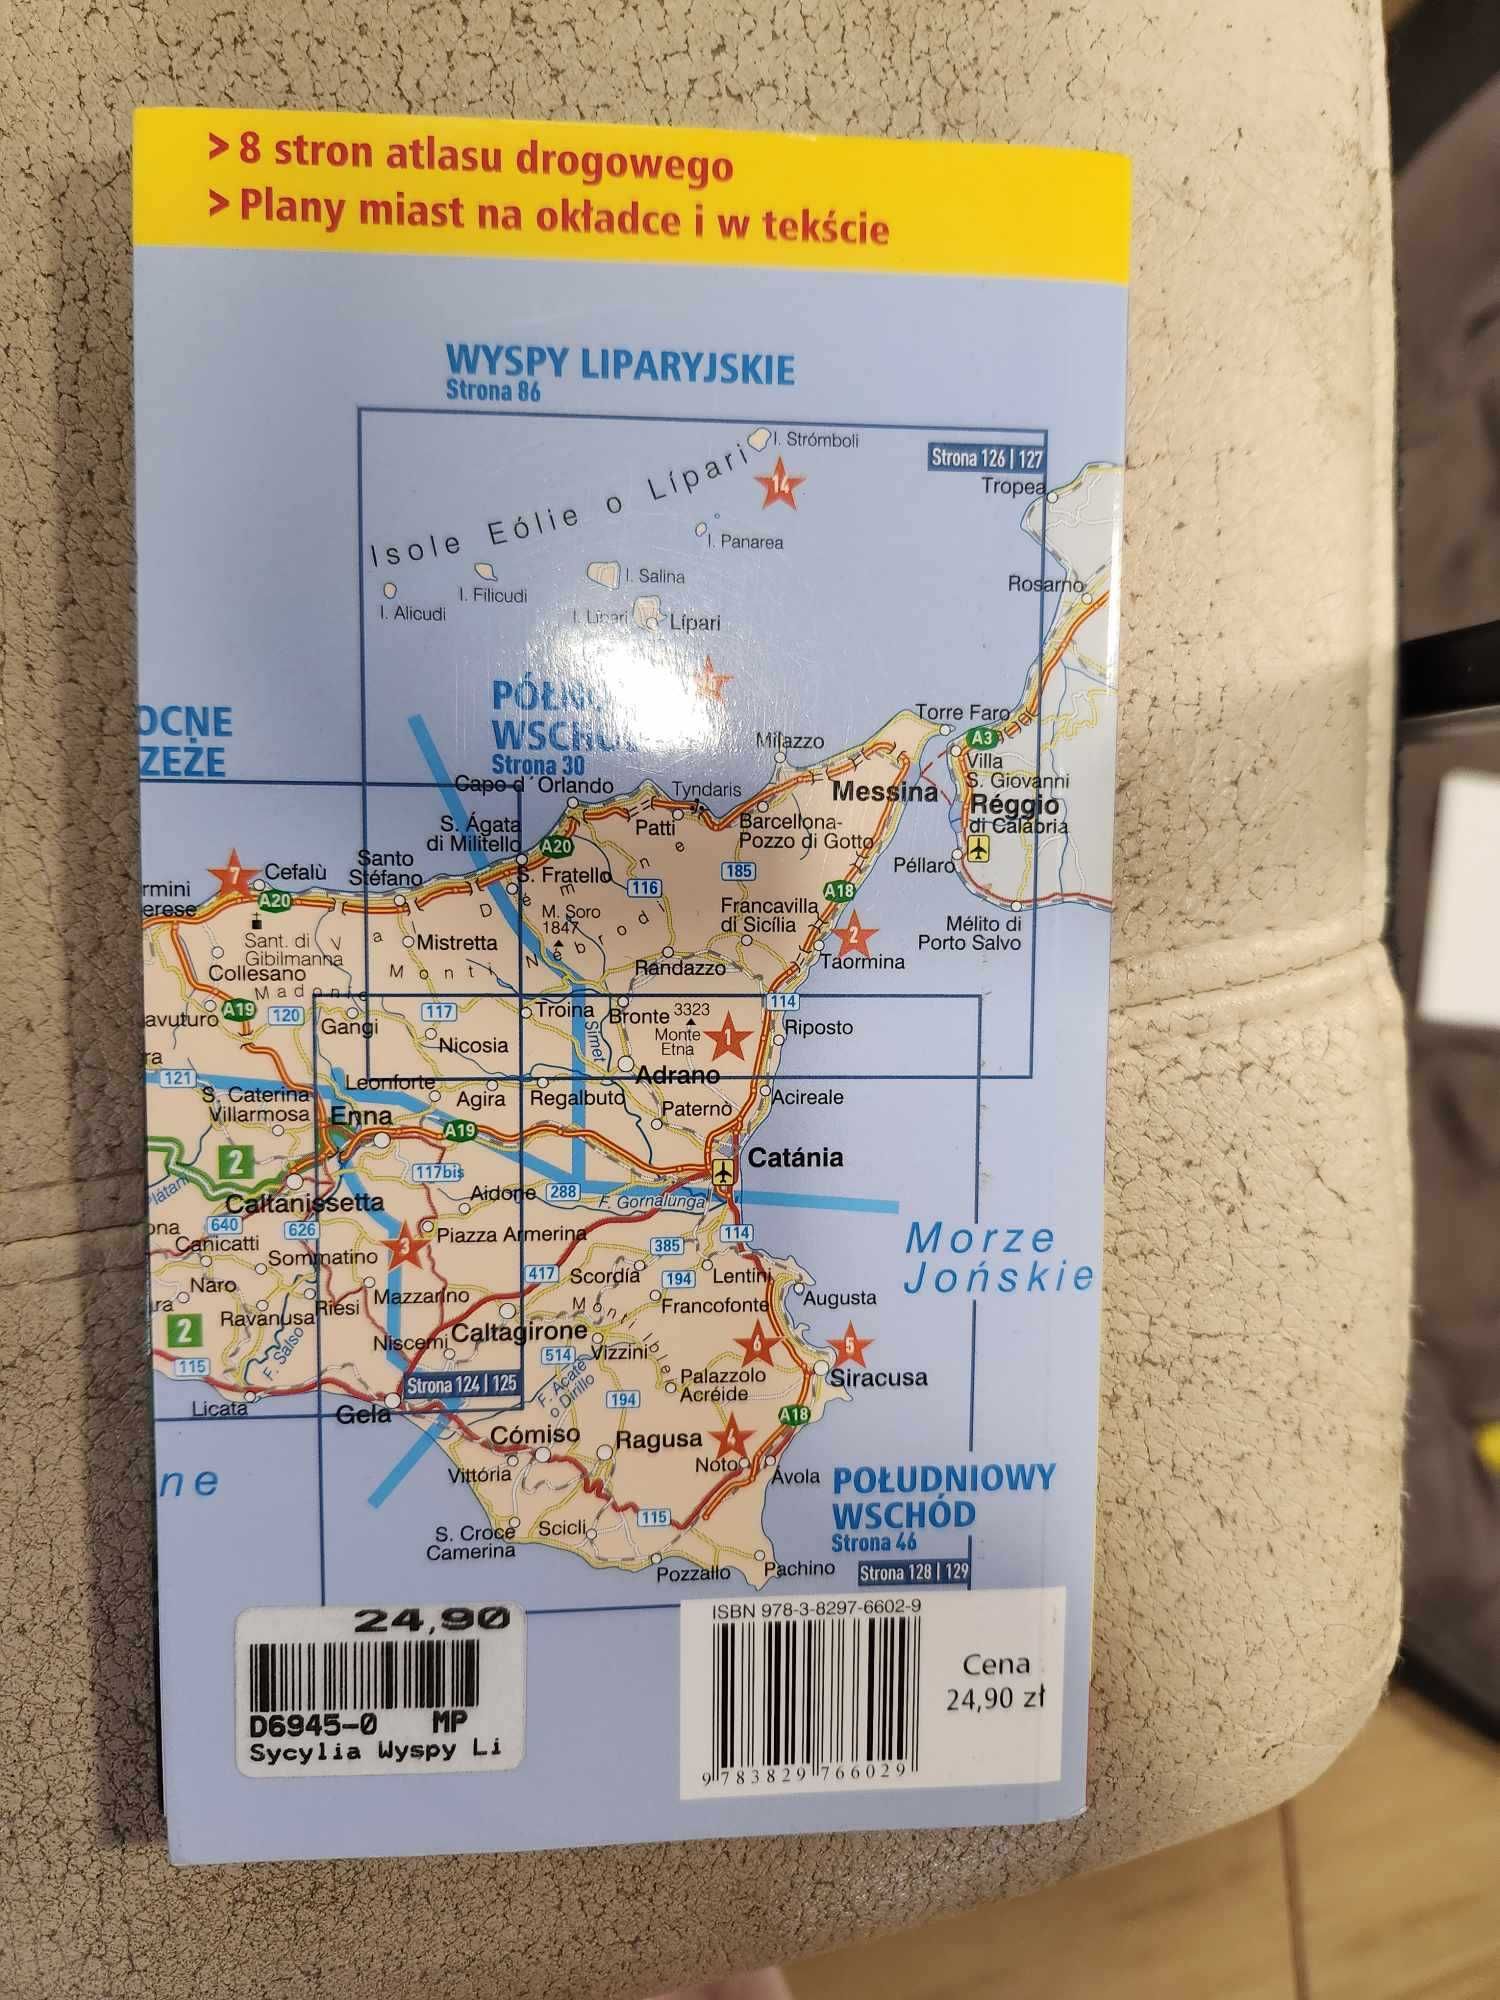 Sycylia Wyspy Liparyjskie z atlasem drogowym MARCO POLO 2009